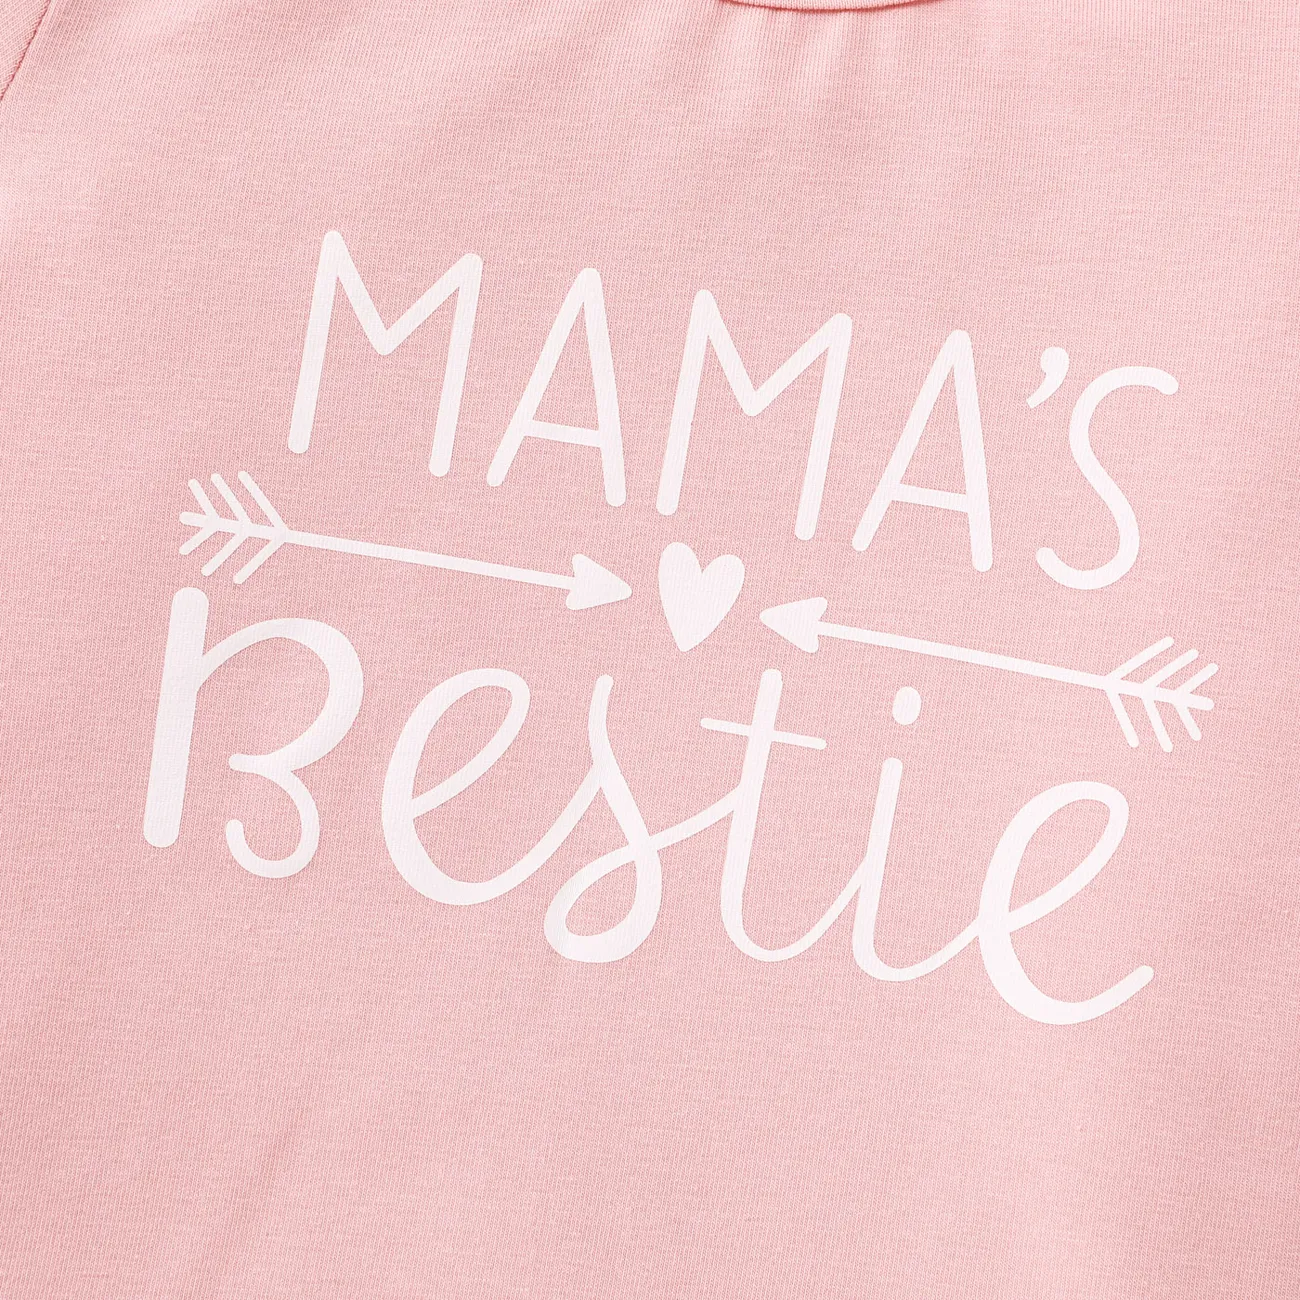 camiseta de algodão de manga curta com estampa de letras para bebês/crianças Rosa big image 1